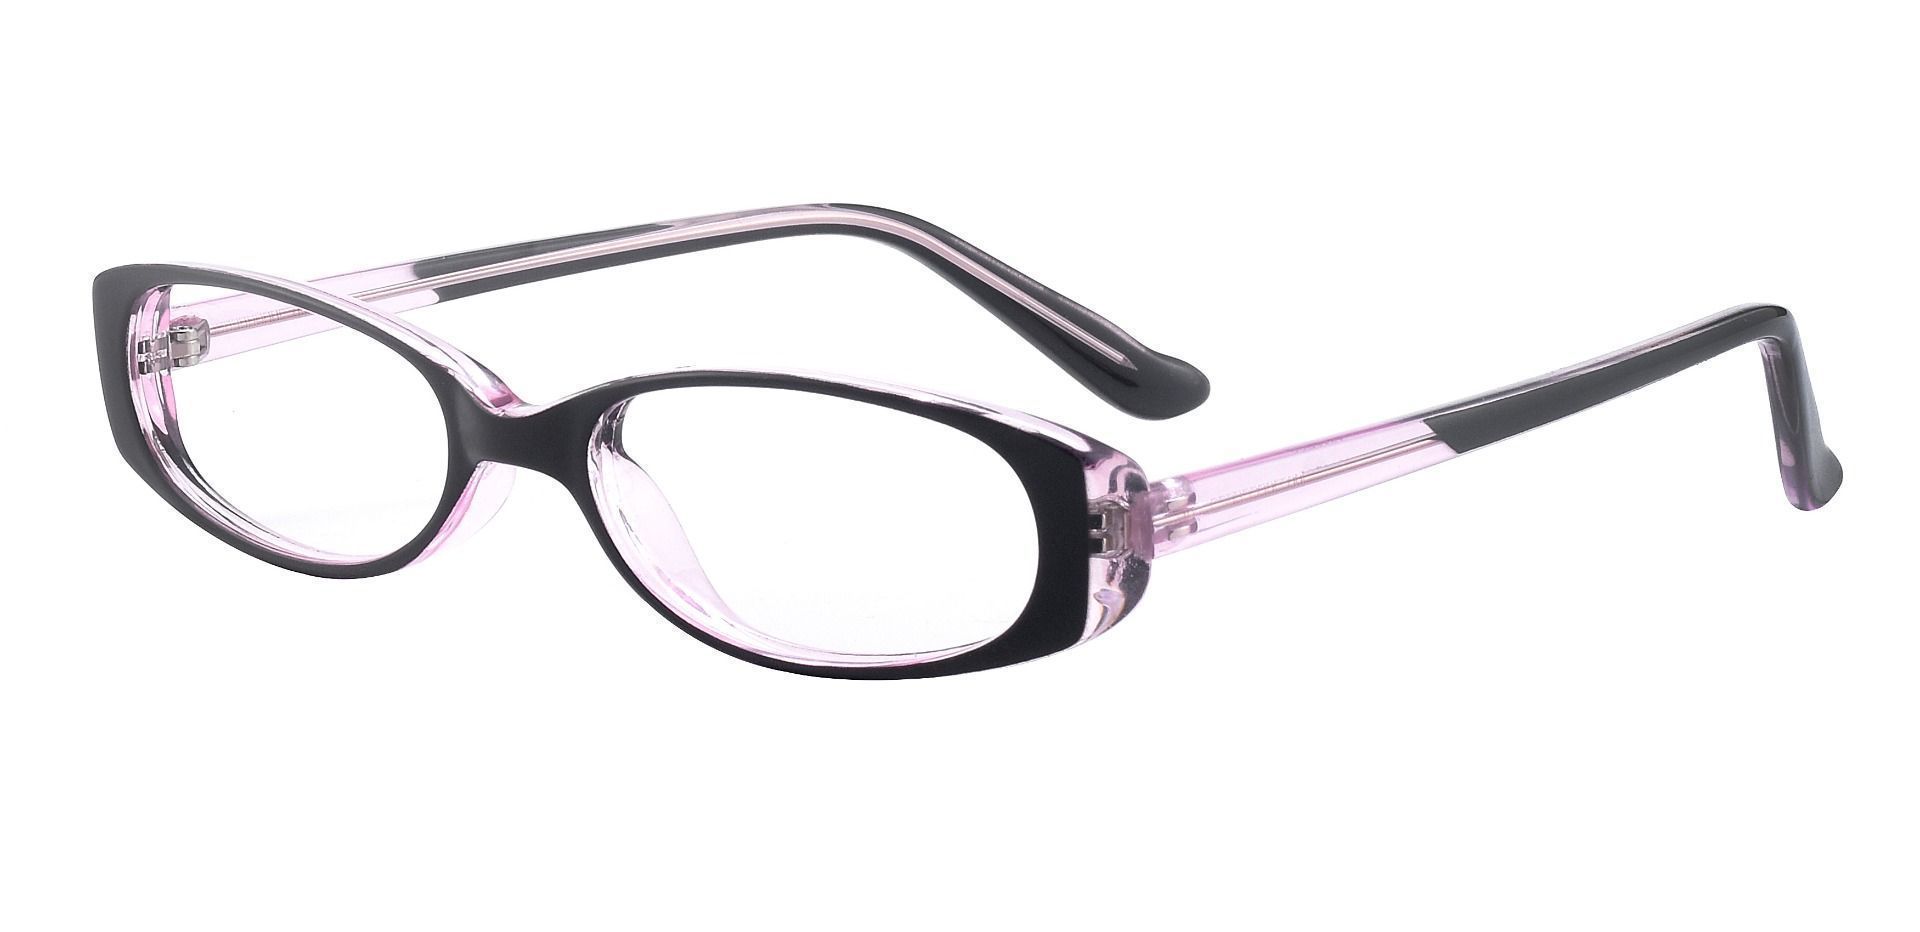 Venetia Oval Single Vision Glasses - Black Purple Crystal